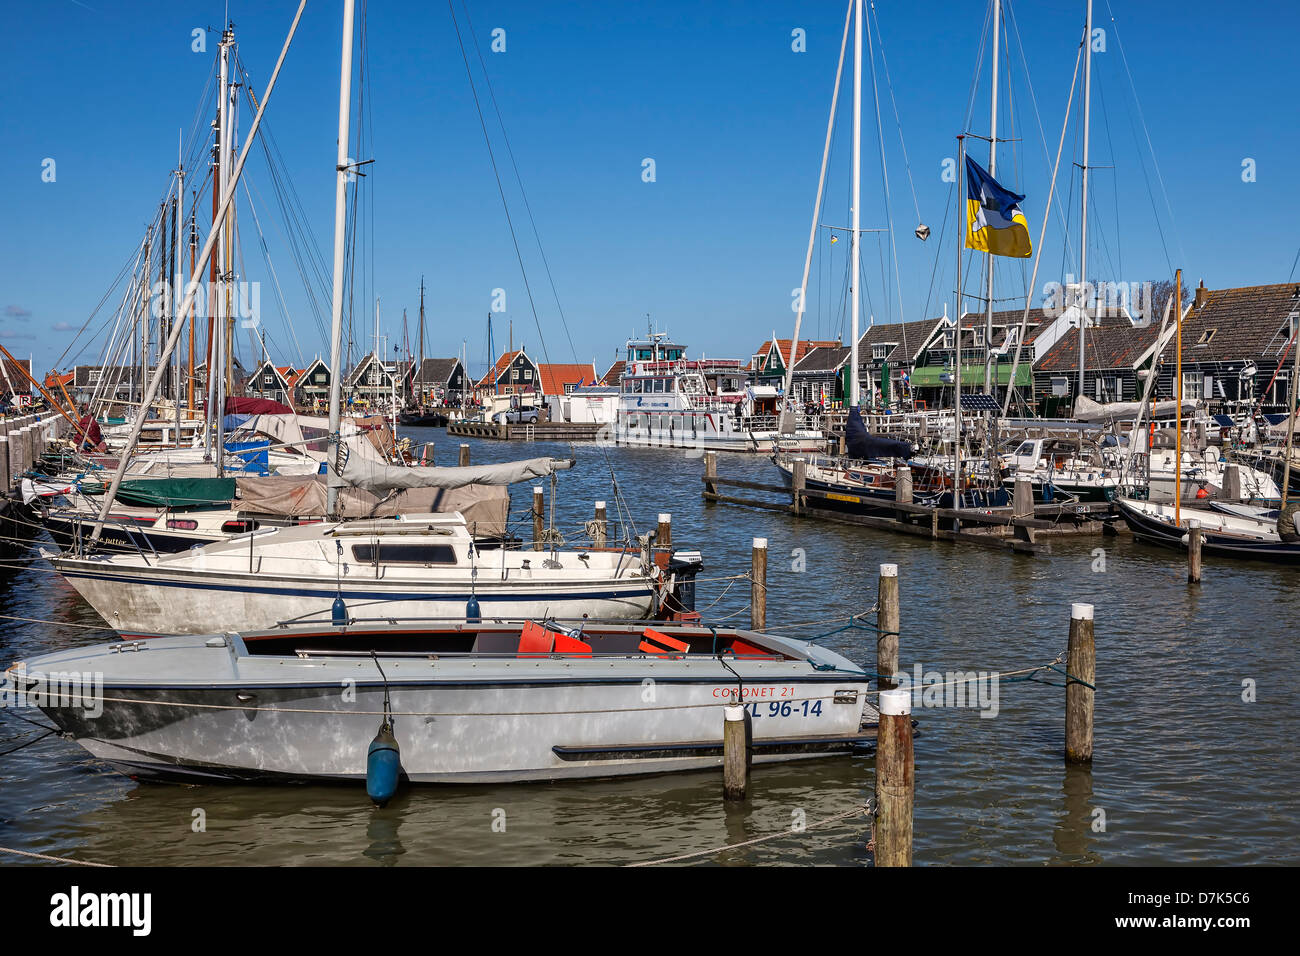 Marken, Waterland, Nordholland, Niederlande Stockfoto